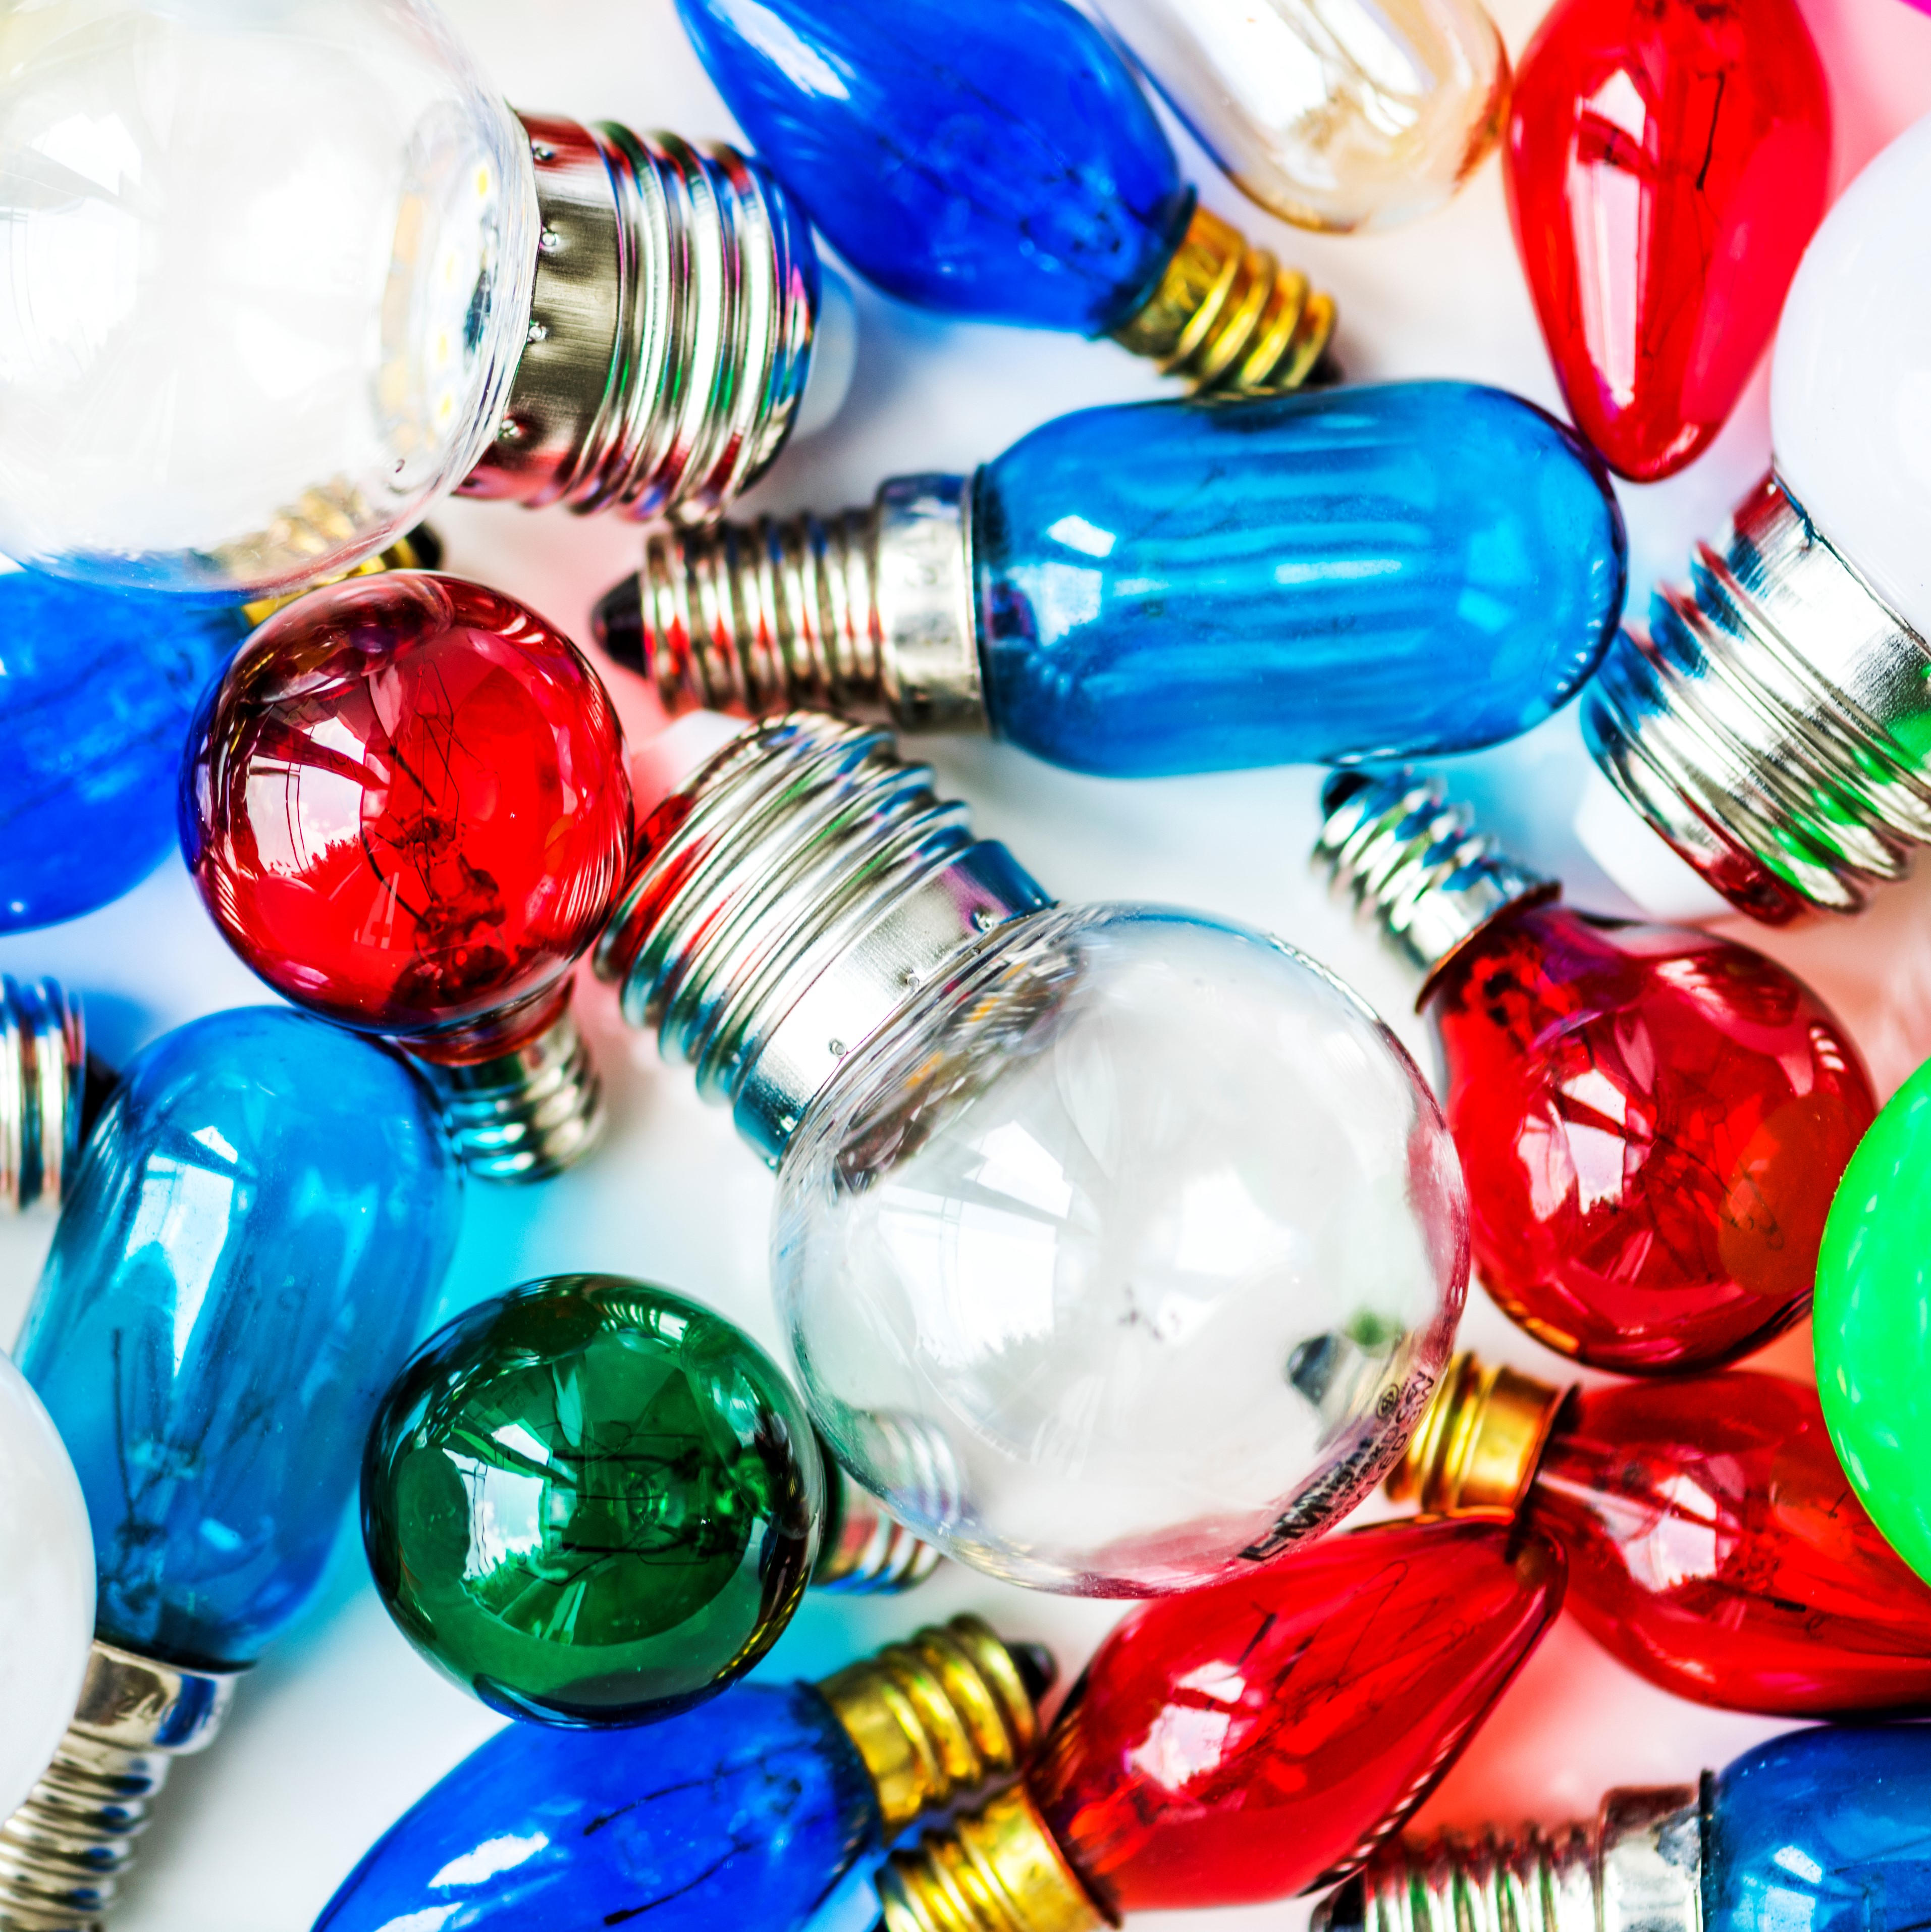 Ampoules LED de Couleur - RGB, Jaune, Bleu, Rouge, Vert - Lampes